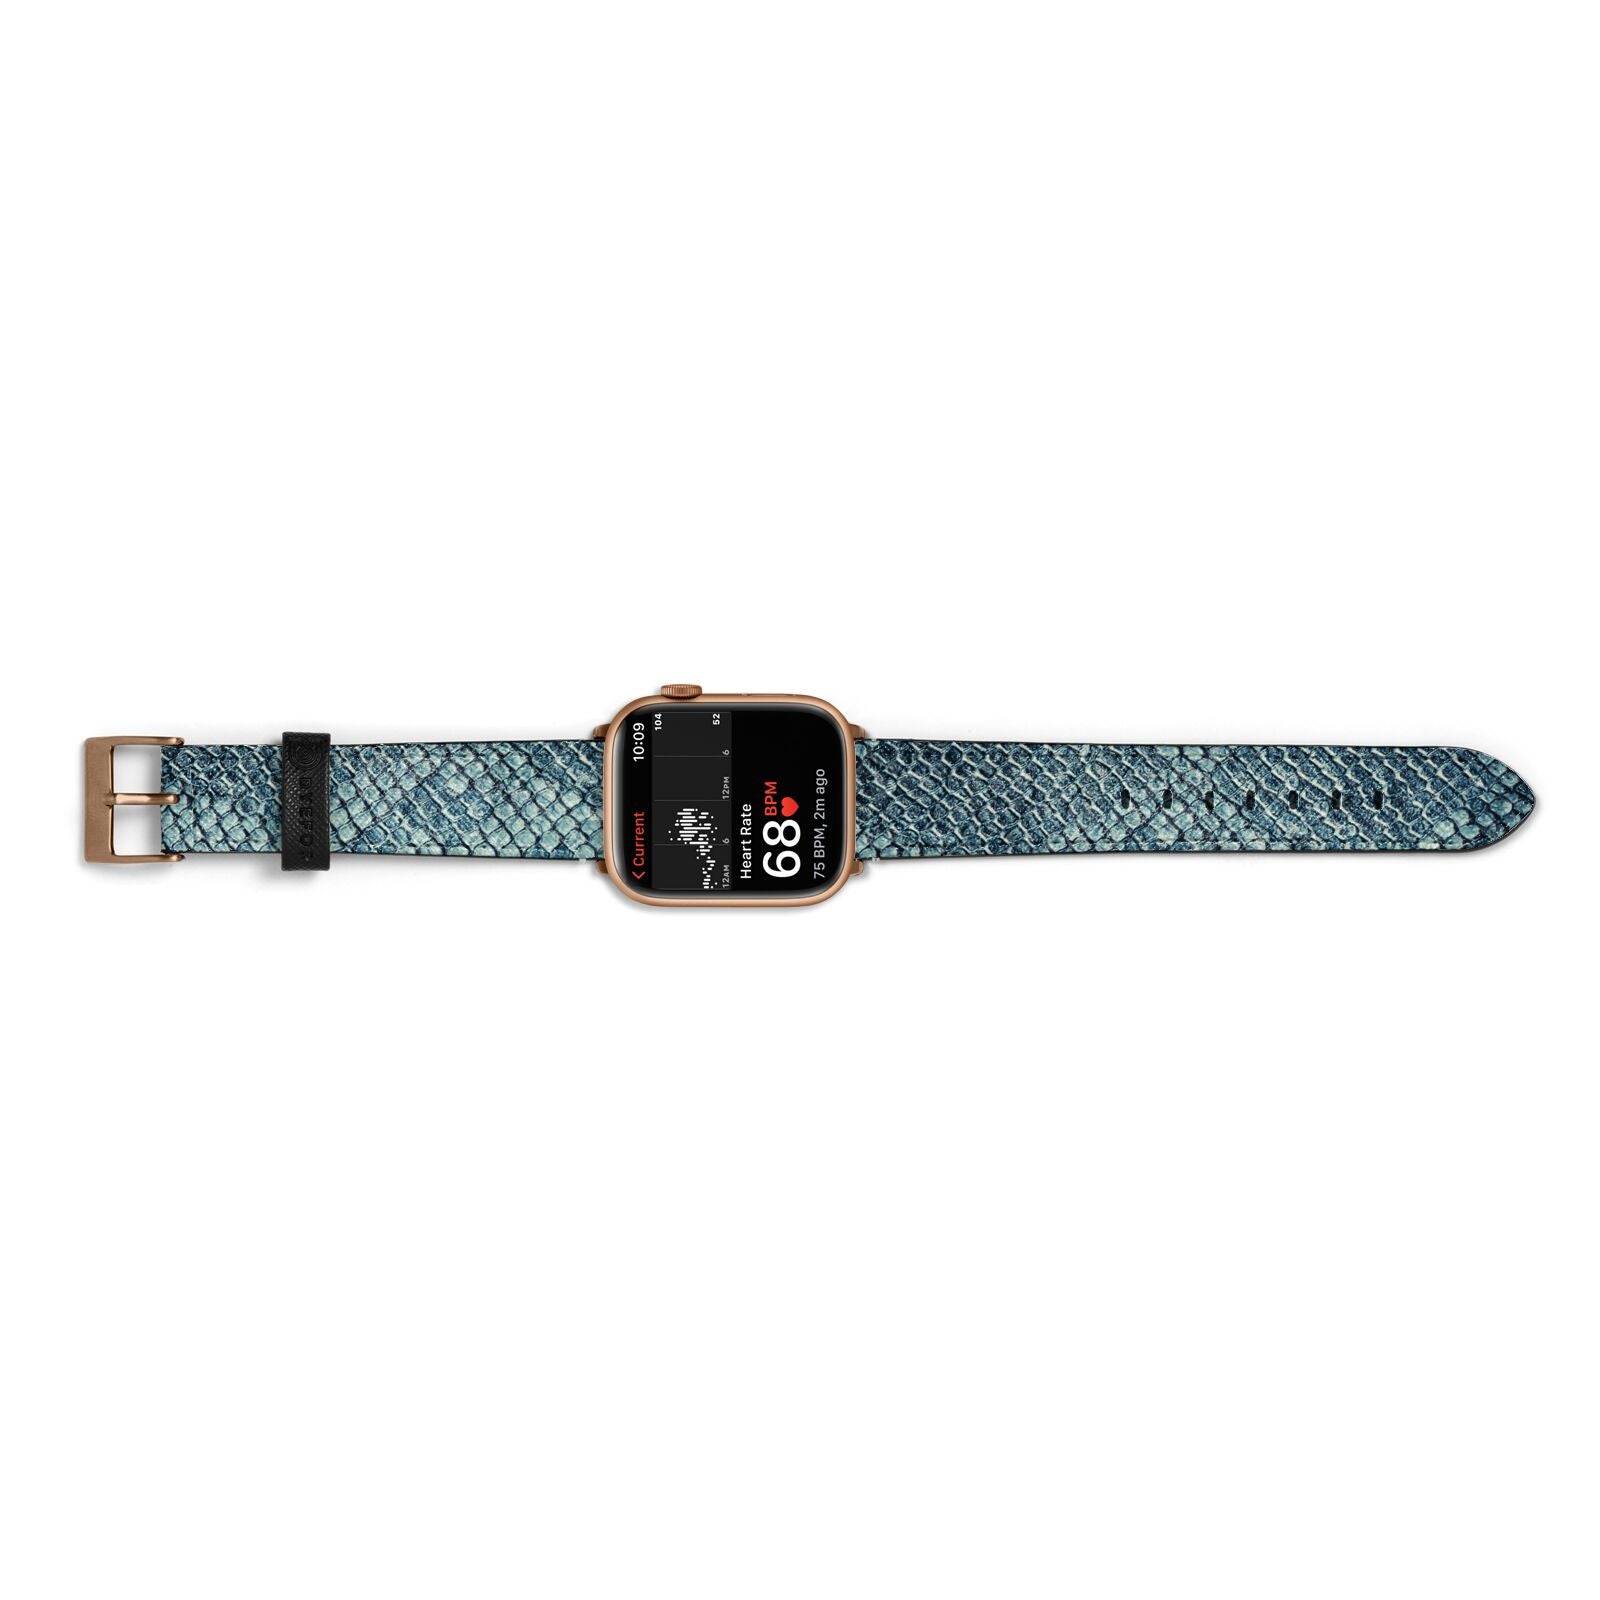 Teal Snakeskin Apple Watch Strap Size 38mm Landscape Image Gold Hardware